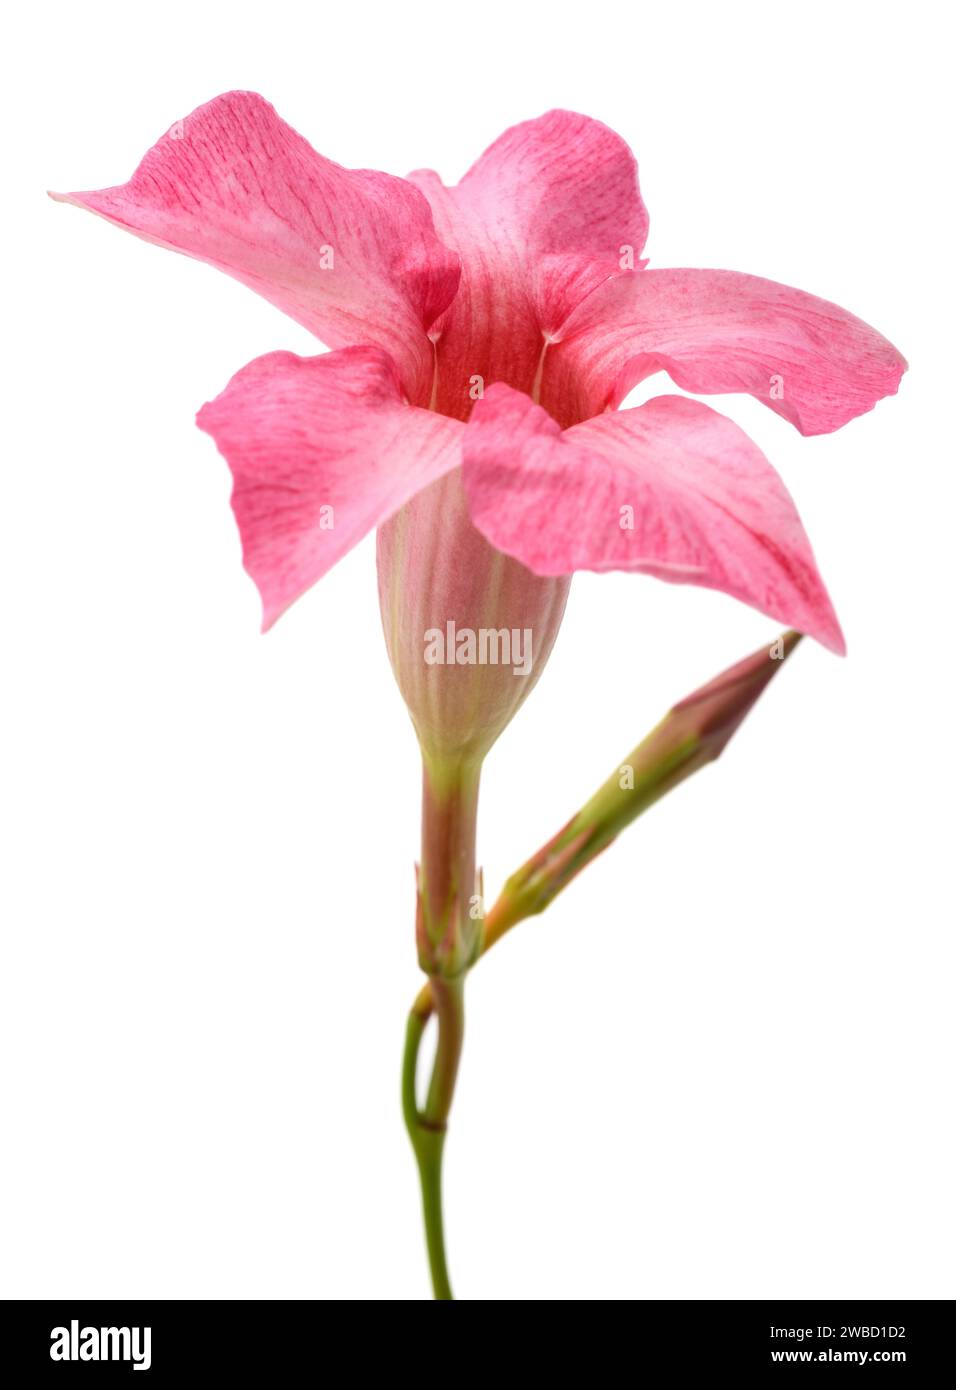 Rosa mandevilla Blume isoliert auf weißem Hintergrund Stockfoto